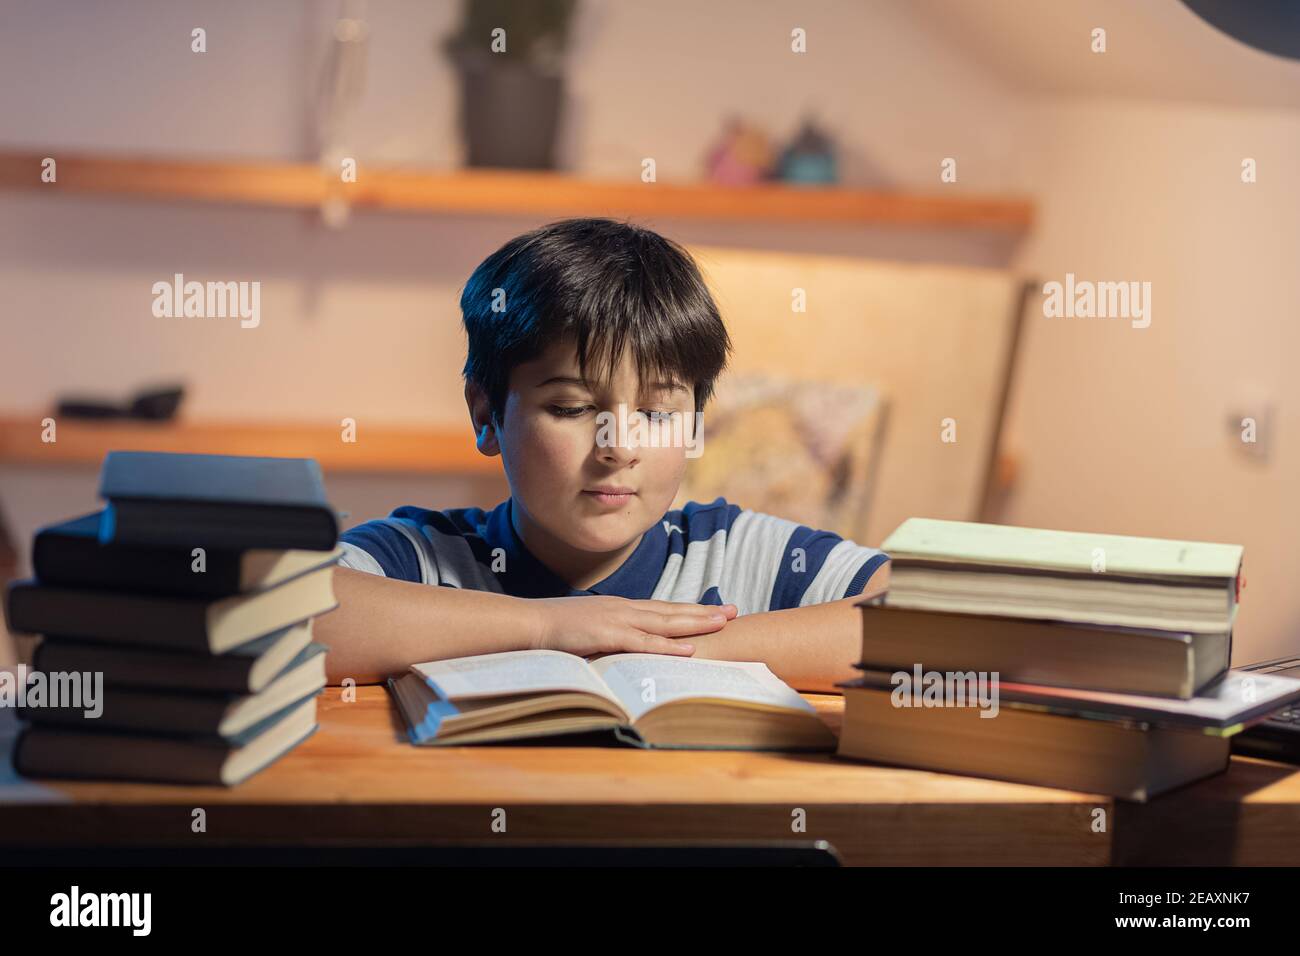 Portrait d'un garçon qui lit. Il est assis dans sa chambre meublée de piles de livres et il est attentif à la lecture. Banque D'Images